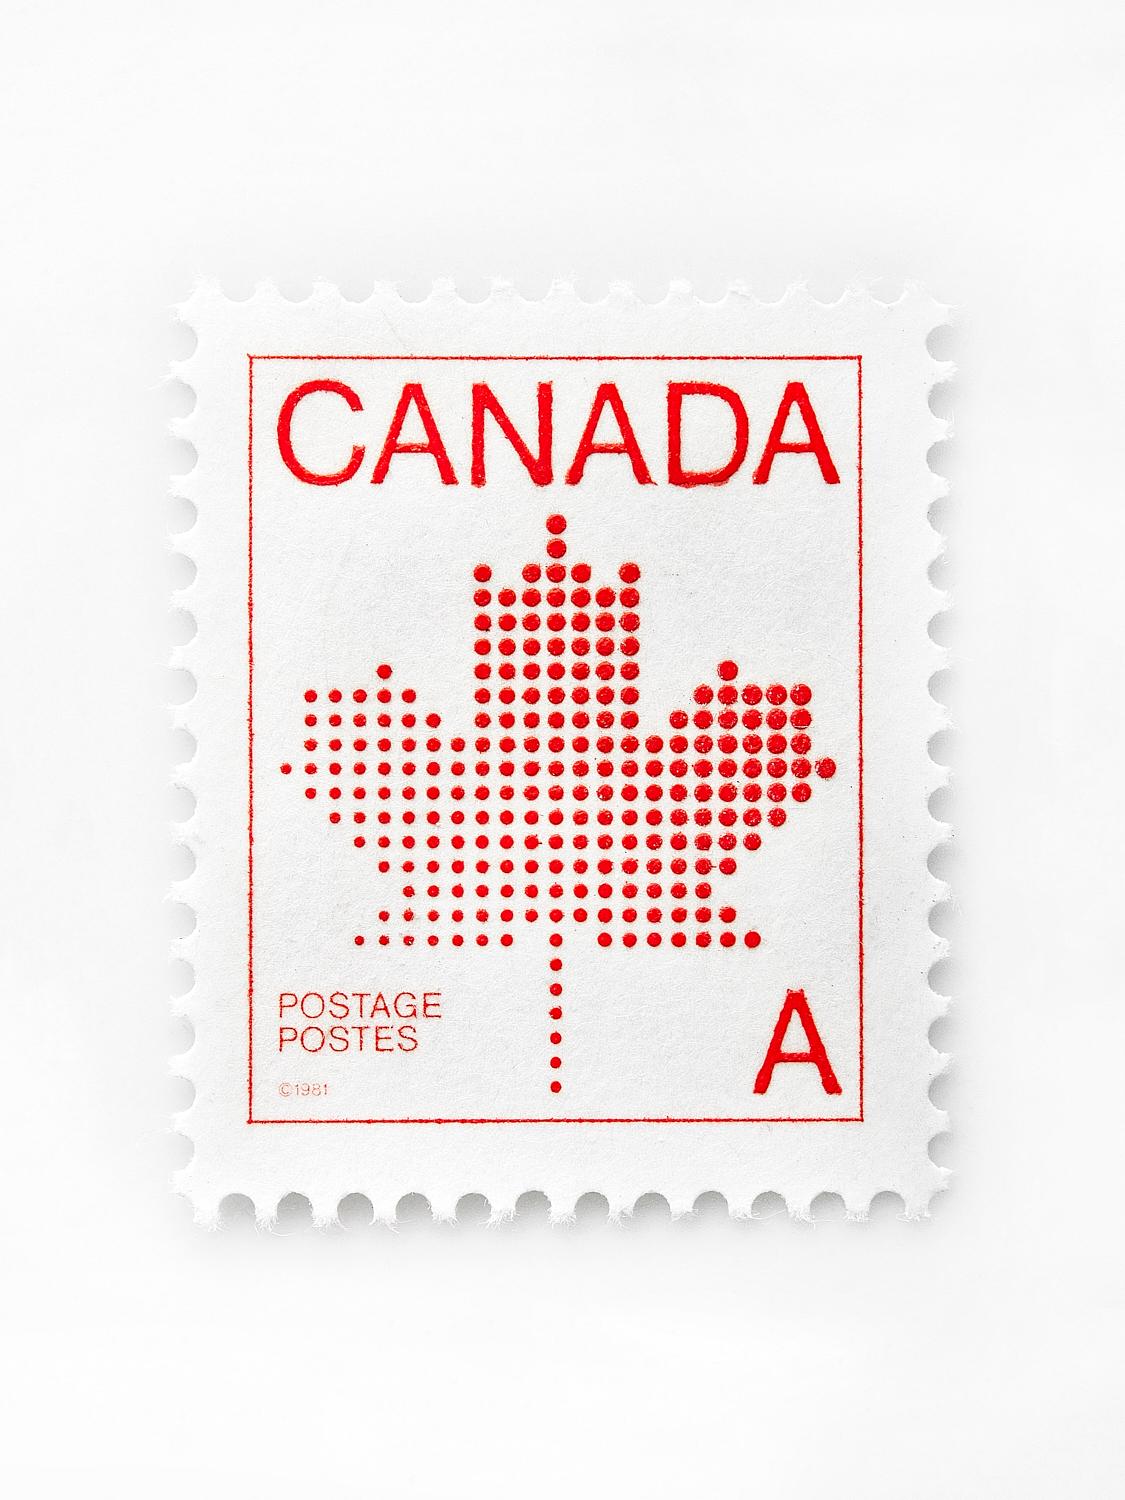 Peter Andrew Lusztyk – Kanada „A“-Stempel, Fotografie 2021, gedruckt nach